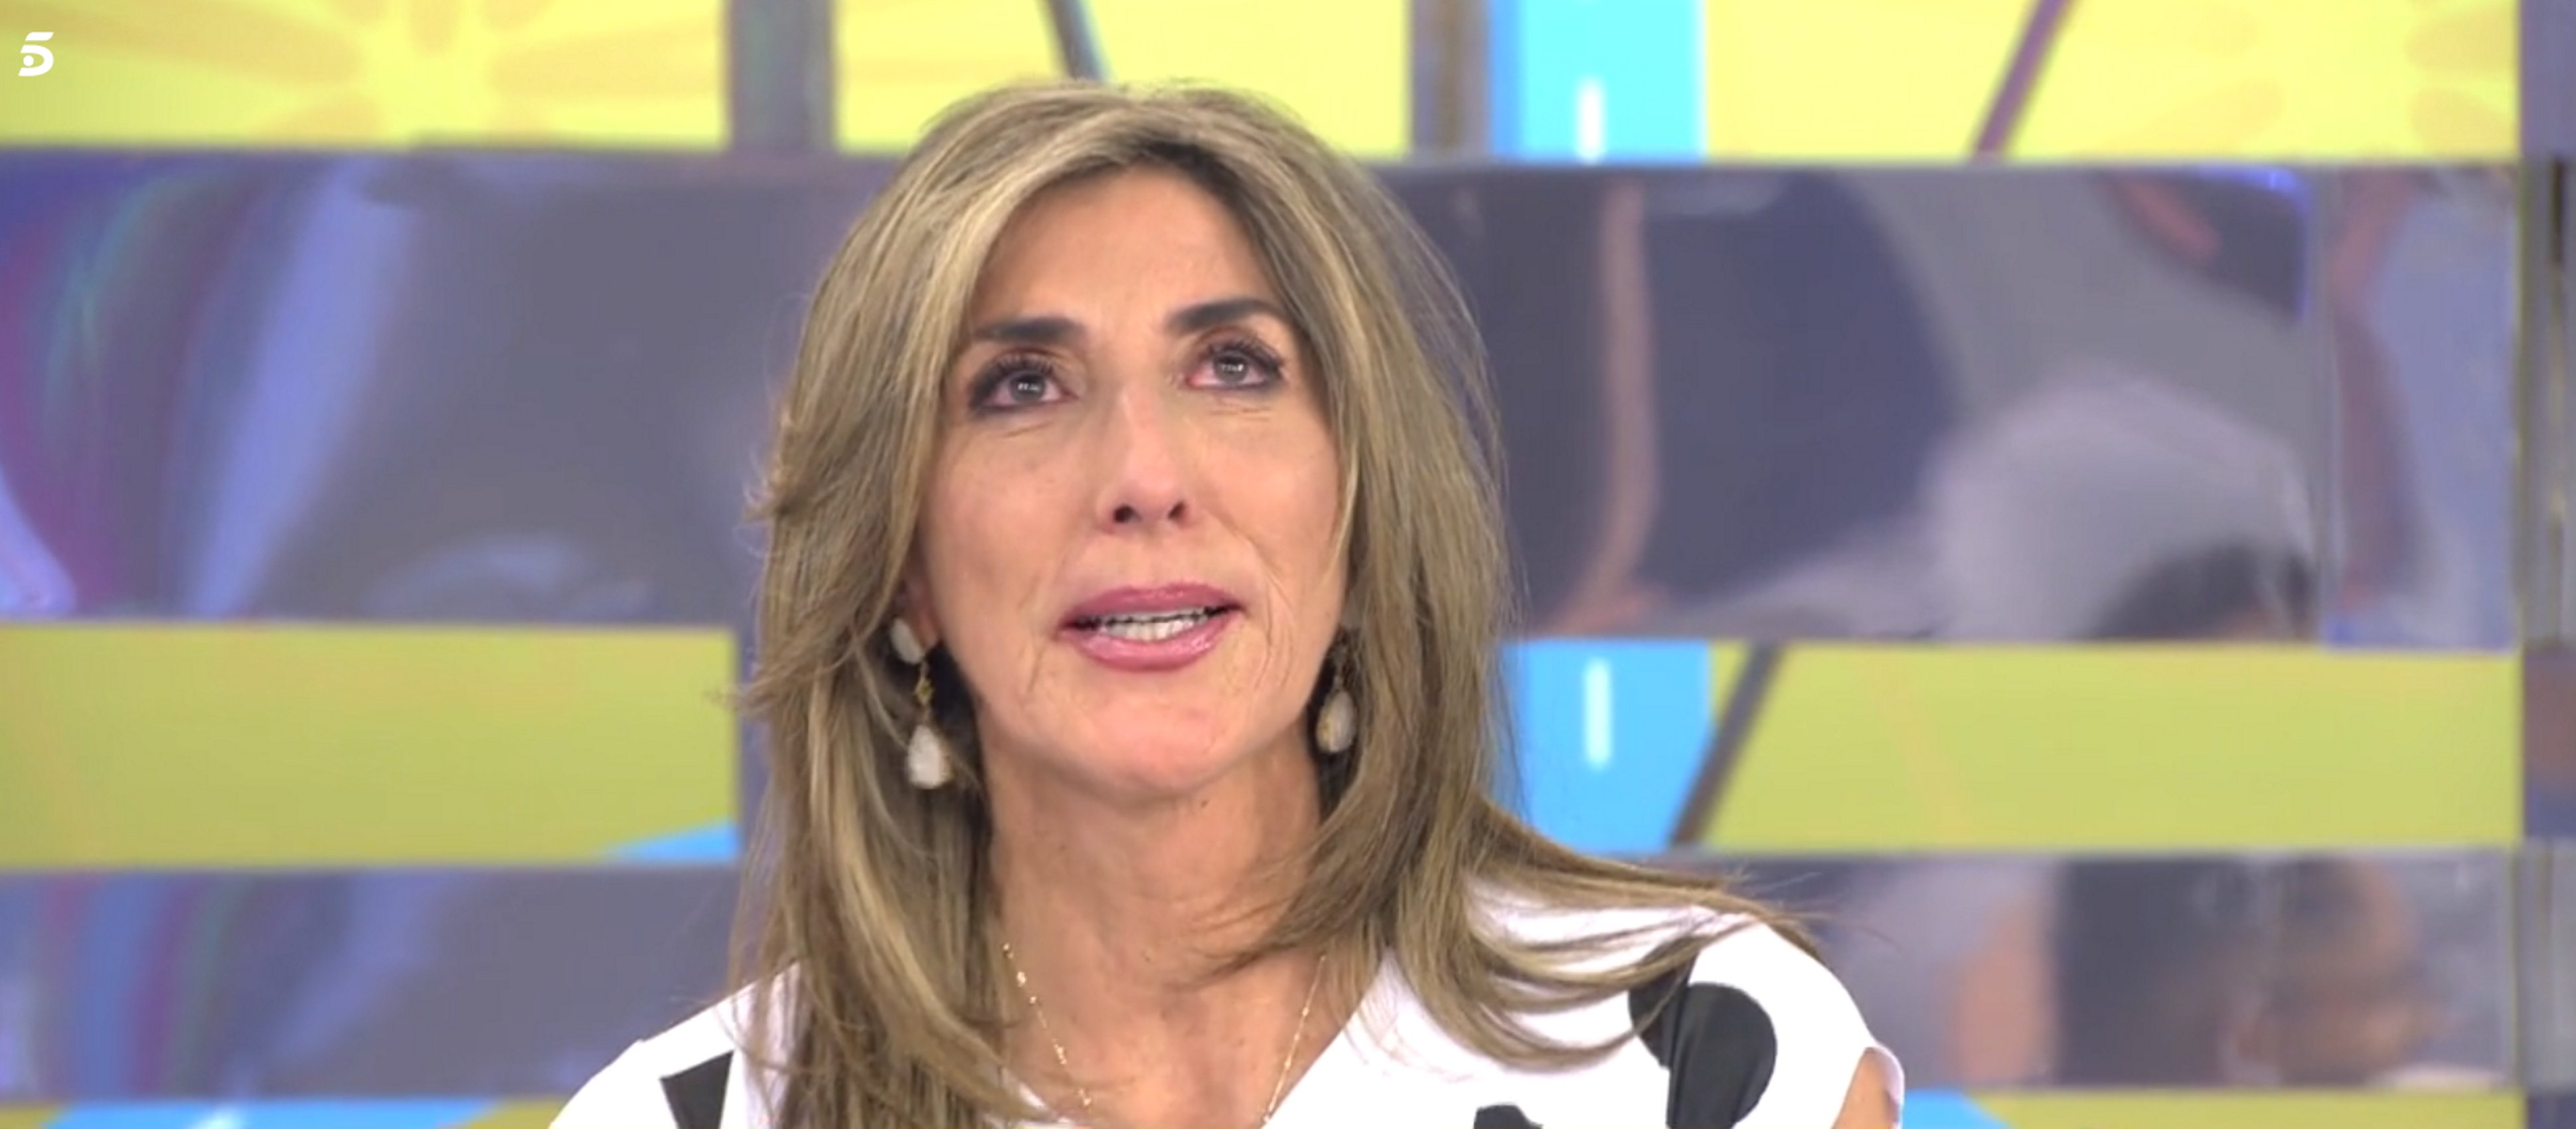 Paz Padilla arrinconada en Telecinco: la echan de otro programa